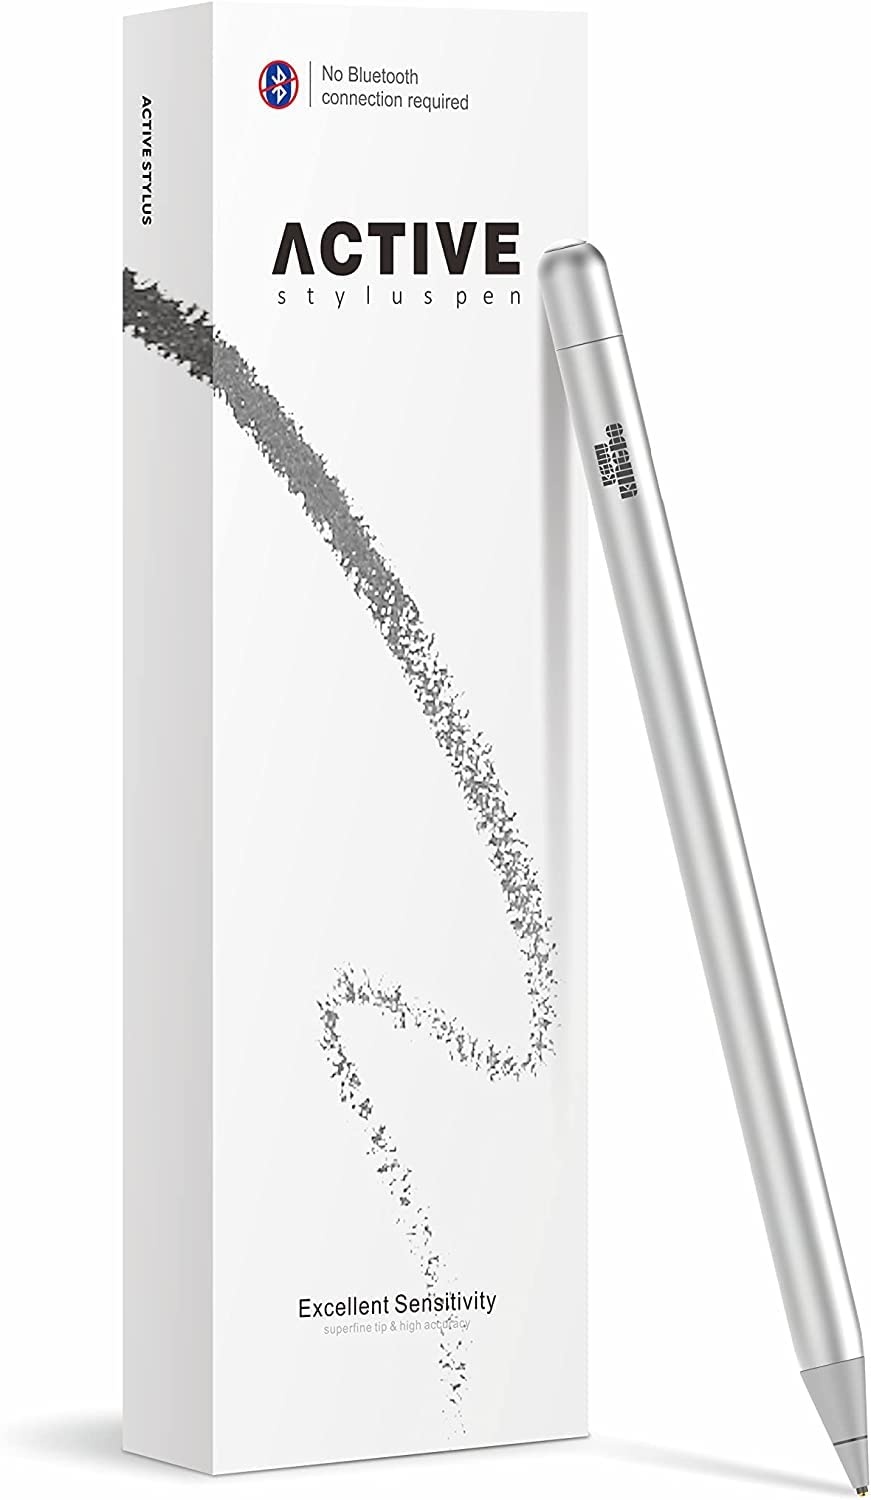 KSW KINGDO iPad Stift, Stylus Stift für All iPad/iPhone, Kapazitiver Wiederaufladbare Stift mit 1.4 mm Extrem Feiner Spitze für iPad/iPhone/iPad Pro/iPhone X/iPhone XS/iPhone 11 (Silber)